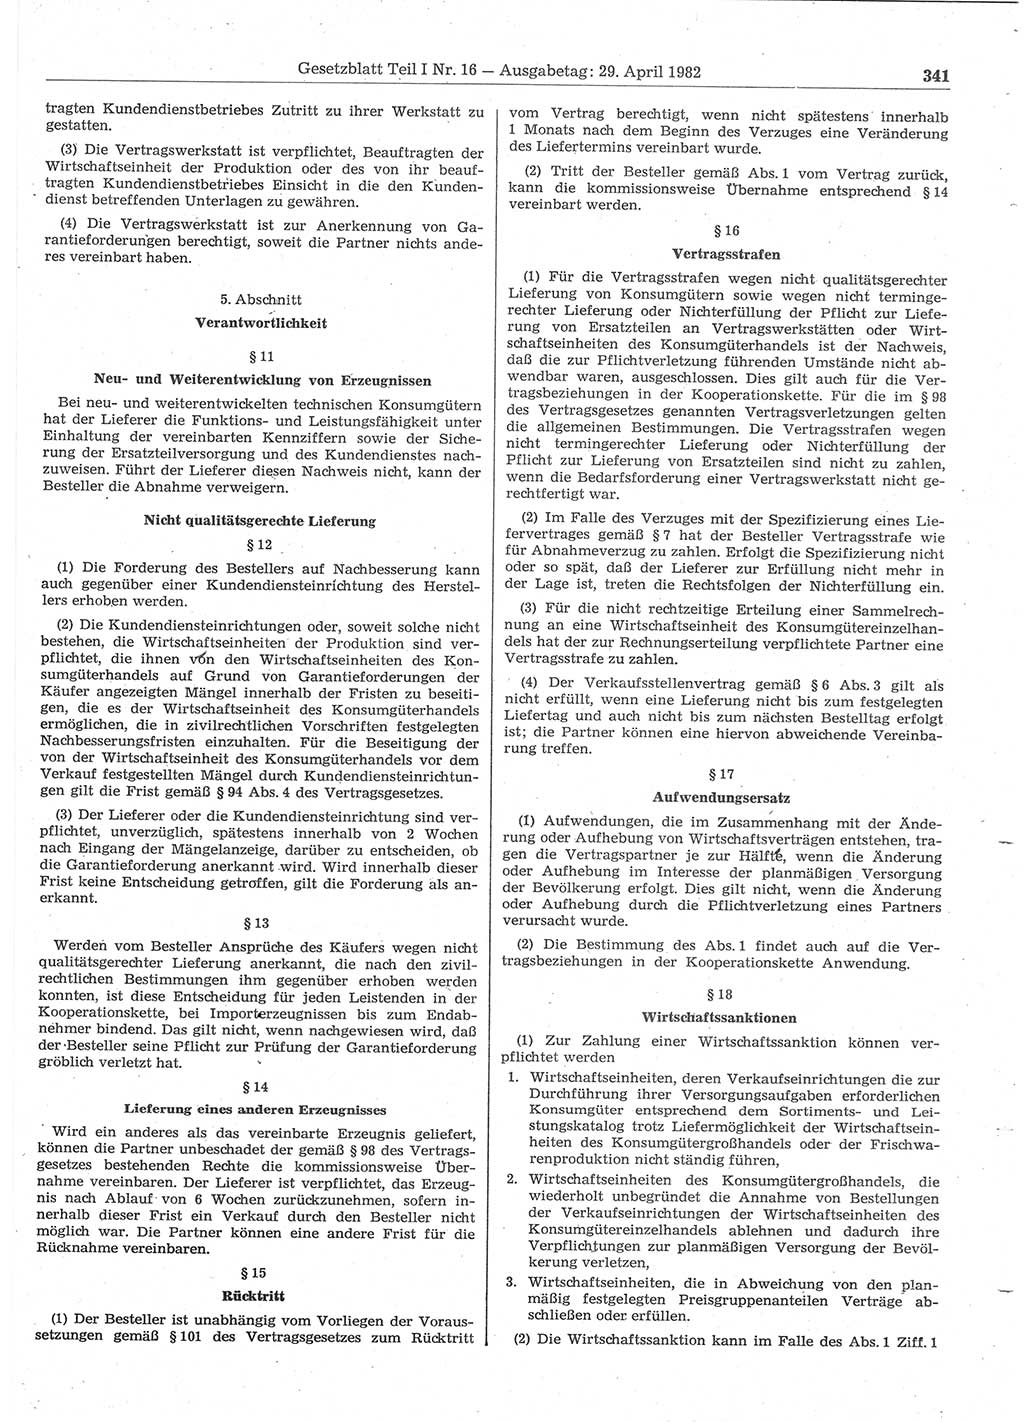 Gesetzblatt (GBl.) der Deutschen Demokratischen Republik (DDR) Teil Ⅰ 1982, Seite 341 (GBl. DDR Ⅰ 1982, S. 341)